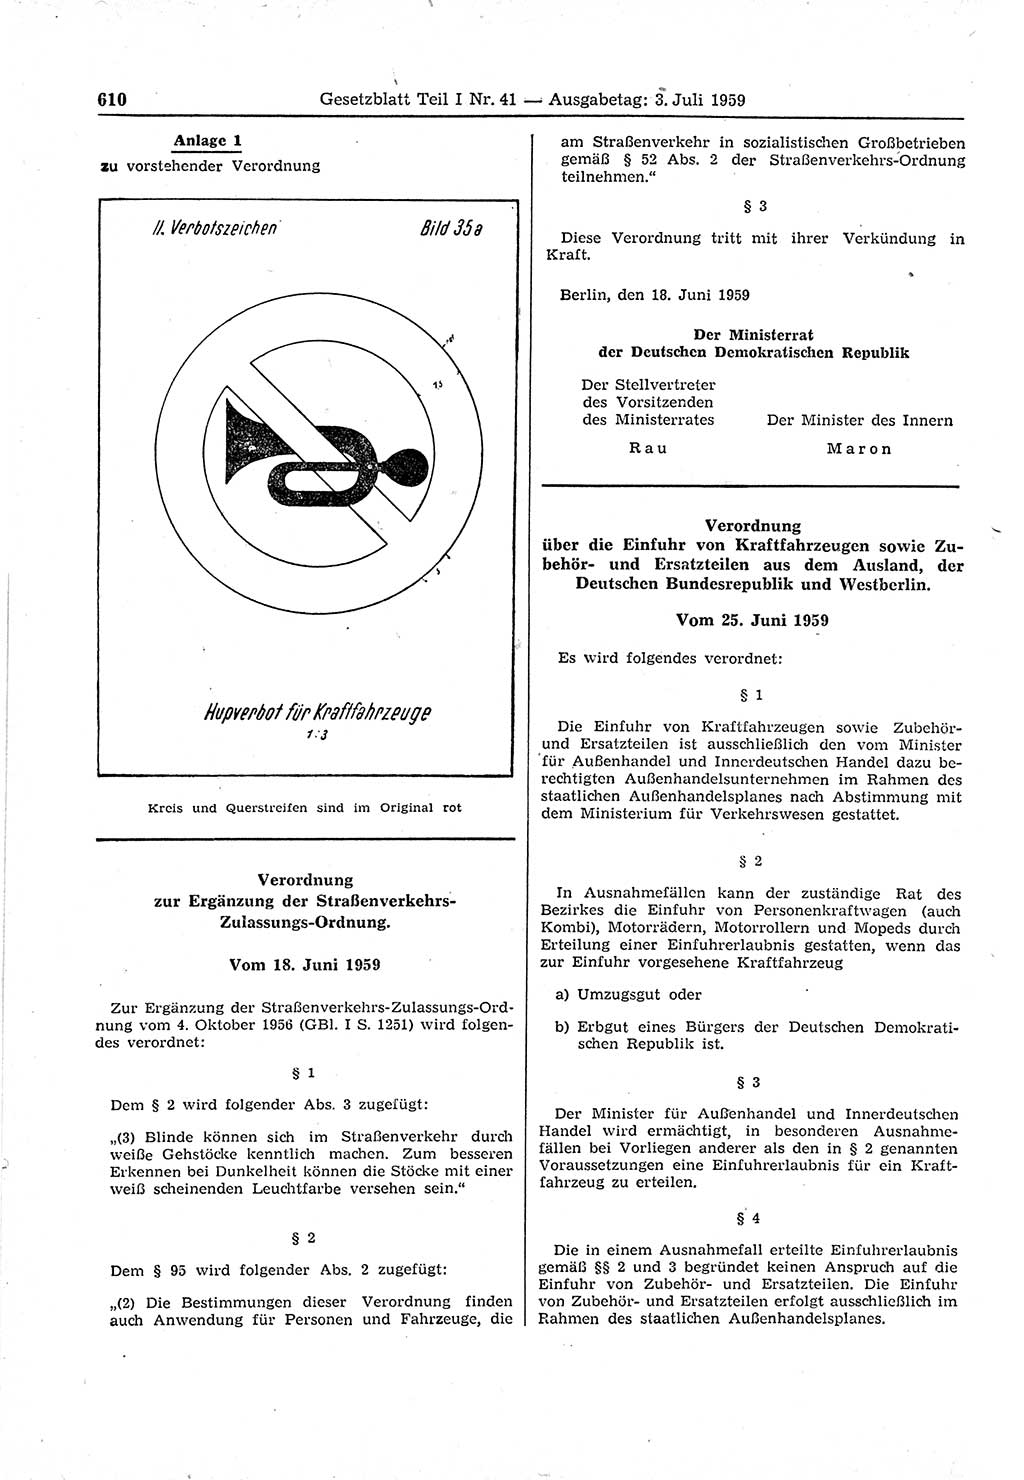 Gesetzblatt (GBl.) der Deutschen Demokratischen Republik (DDR) Teil Ⅰ 1959, Seite 610 (GBl. DDR Ⅰ 1959, S. 610)